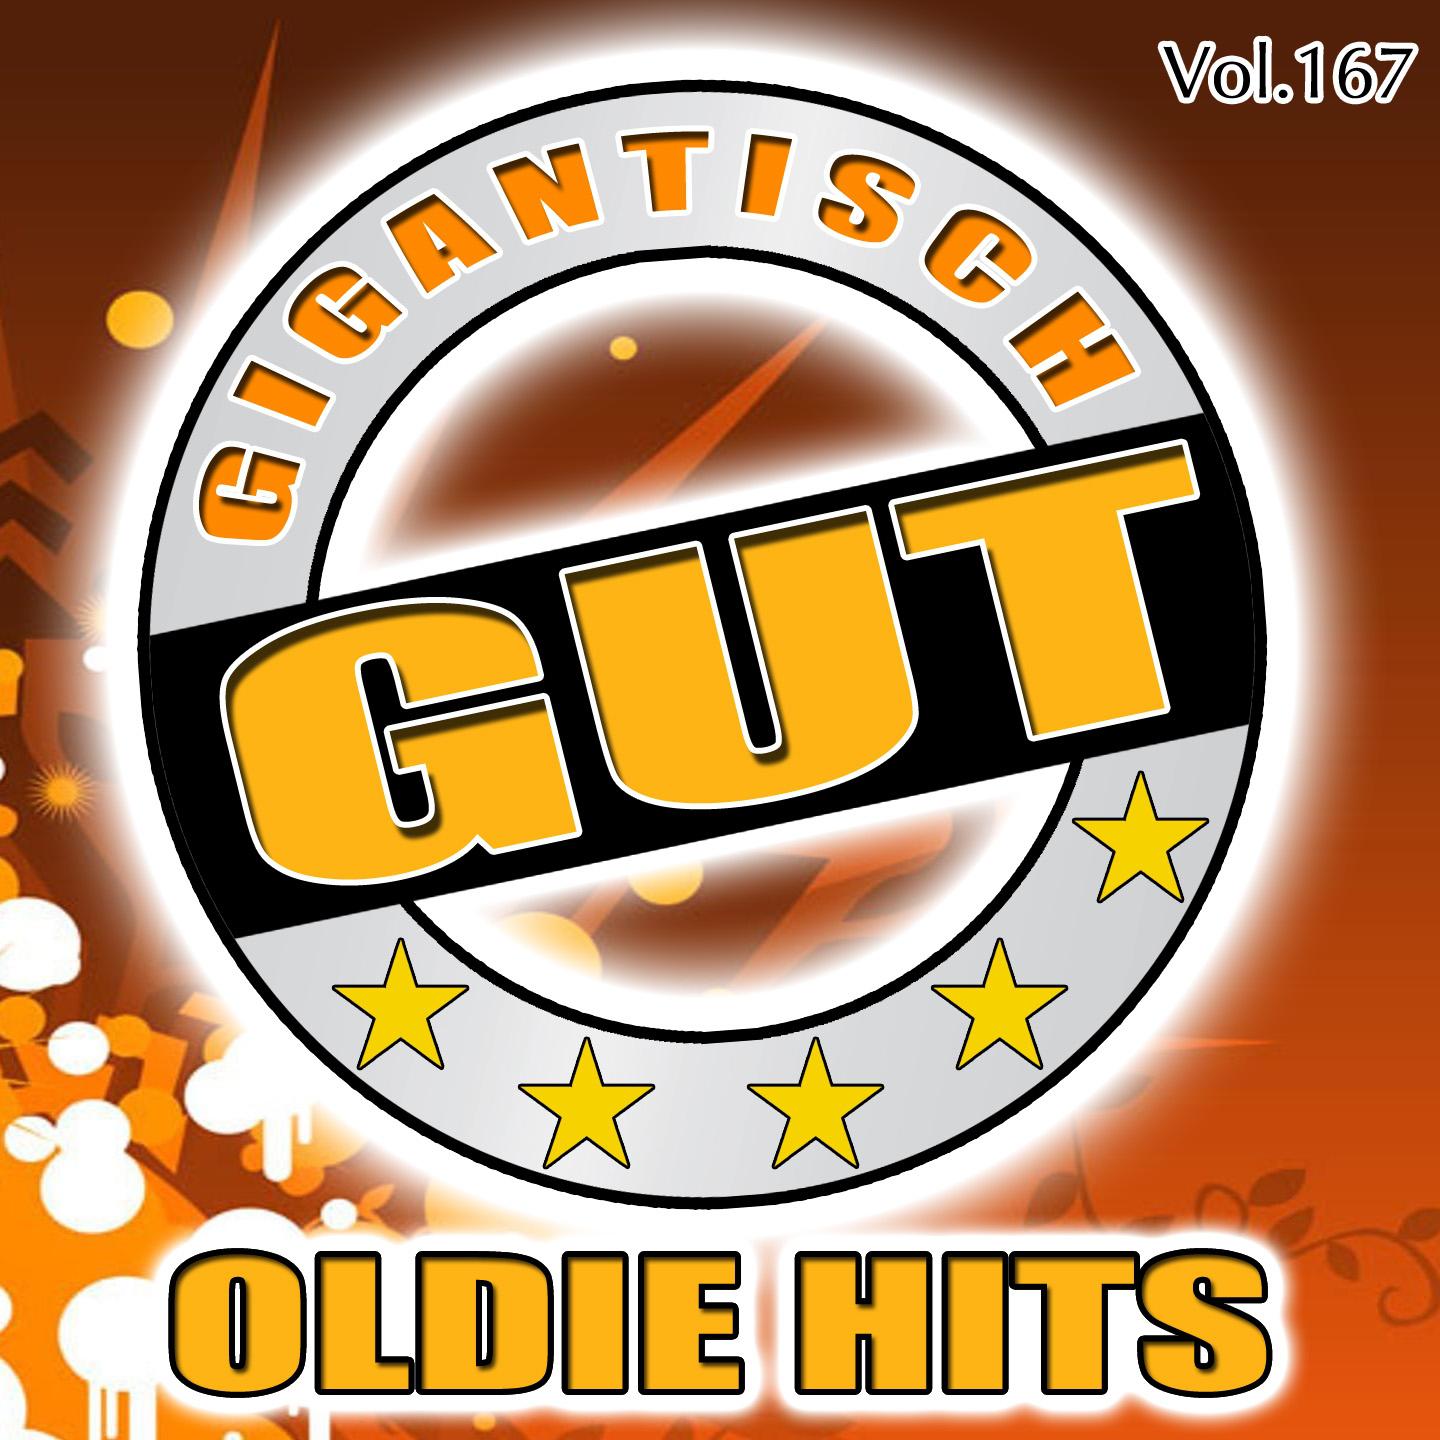 Gigantisch Gut: Oldie Hits, Vol. 167